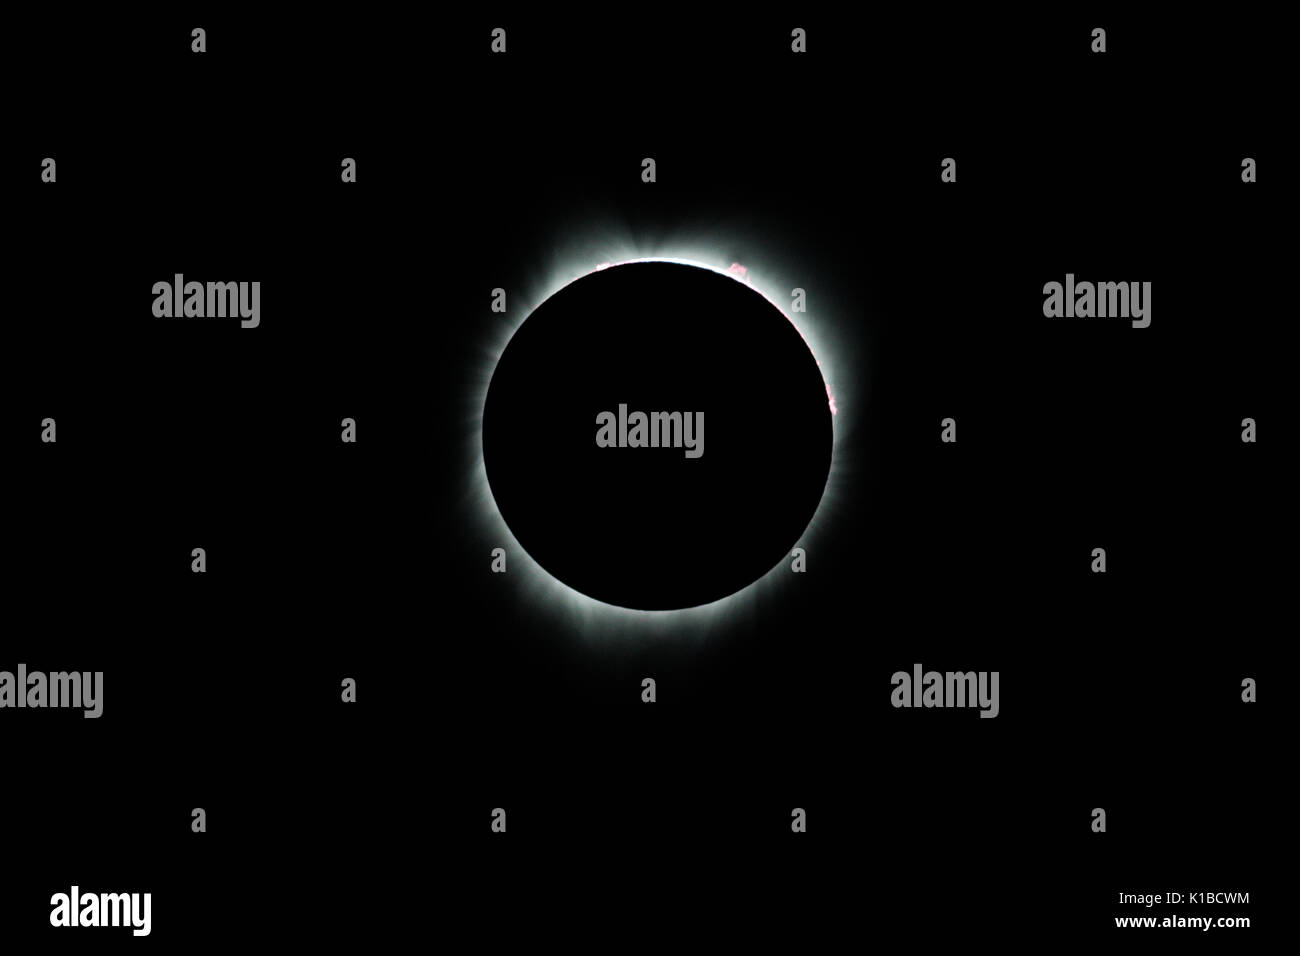 Bei einer totalen Sonnenfinsternis der Mond vollständig bedeckt die Sonne. Dieses unglaubliche Ereignis kann im Durchschnitt alle 18 Monate irgendwo auf der Erde gesehen werden. Stockfoto